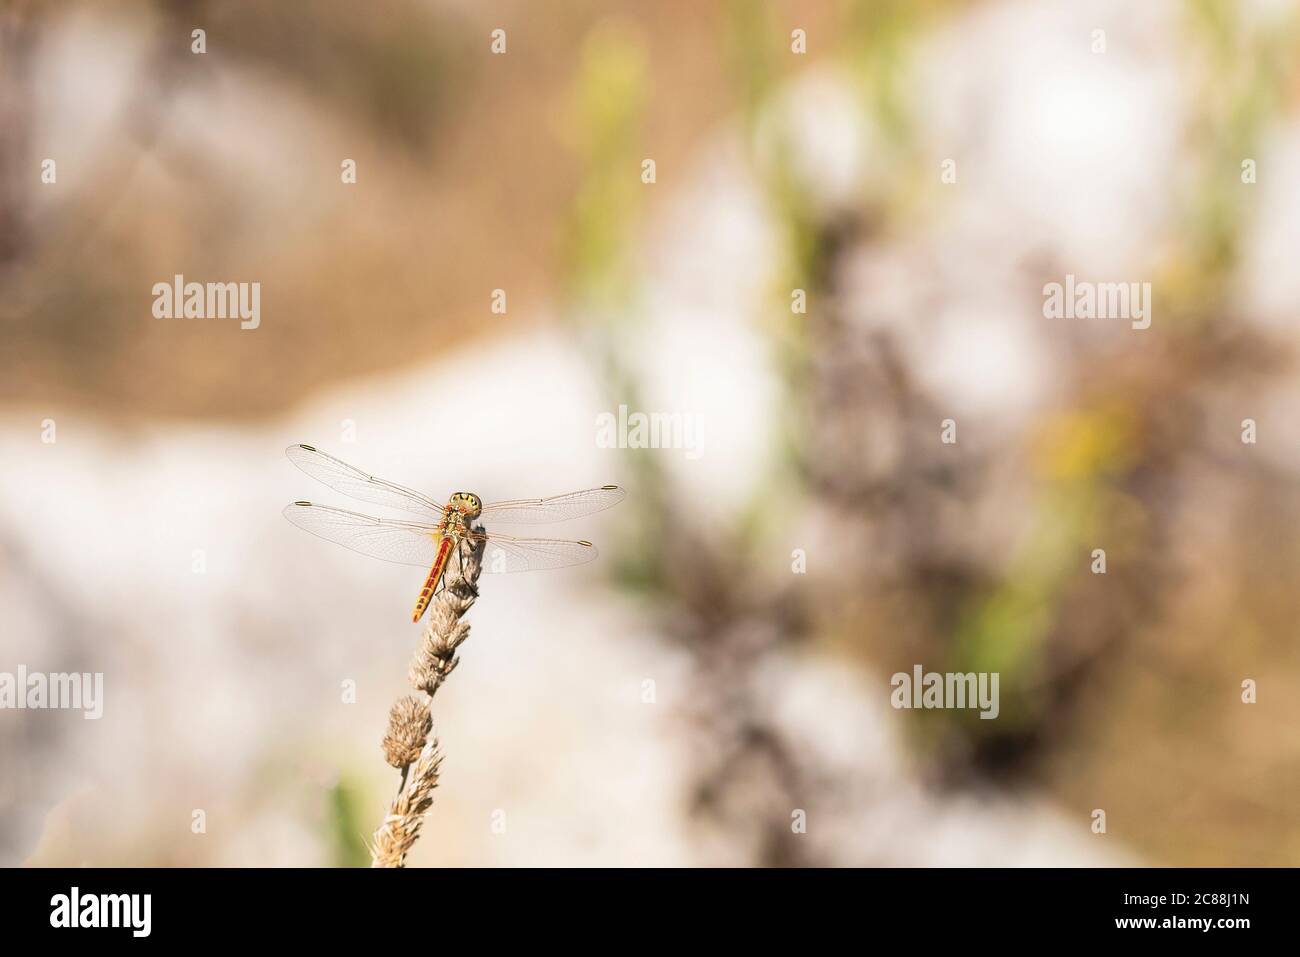 Sympetrum fonscolombii. Invertebrati di animali volanti, classe di insetti. Le libellule sono insetti carnivori, hanno 4 ali trasparenti con nervature fini. Foto Stock